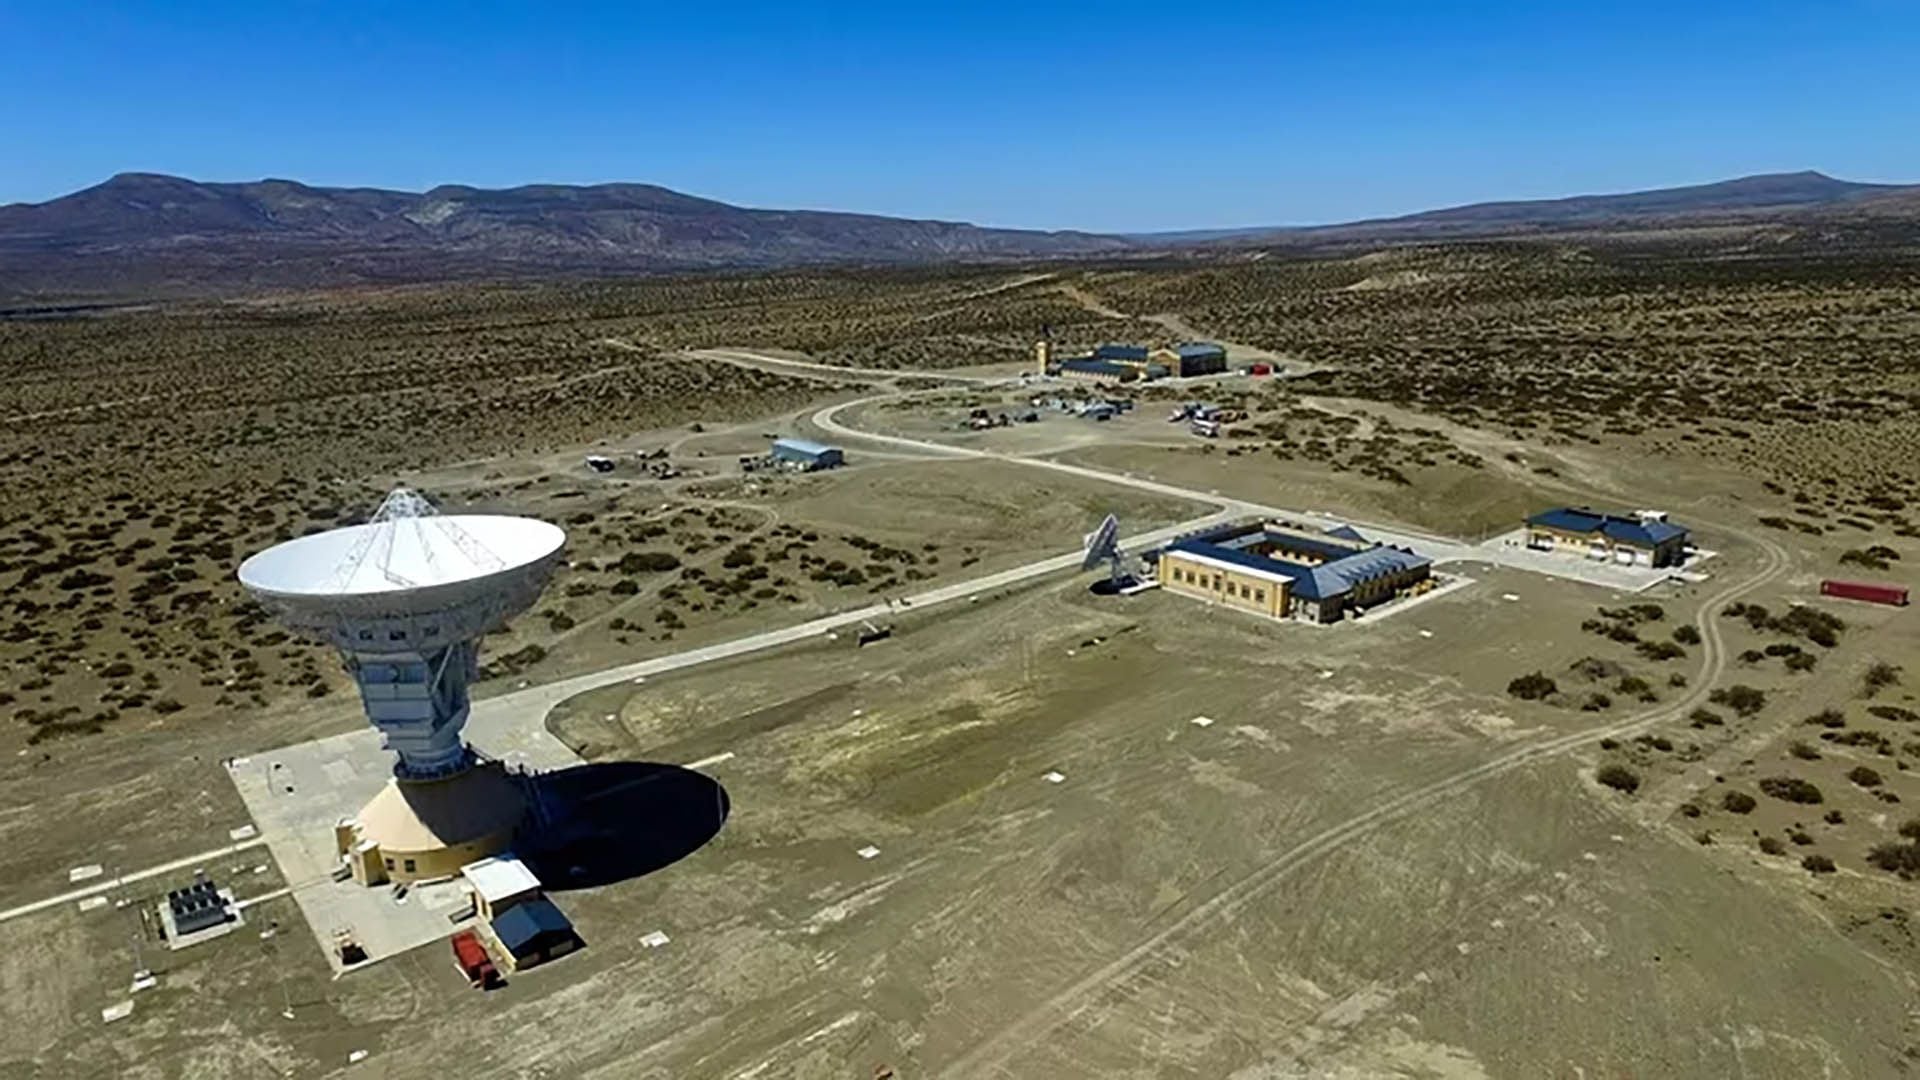 La base de vigilancia espacial que el régimen chino controla en Neuquén, en el sur de la Argentina (Infobae)